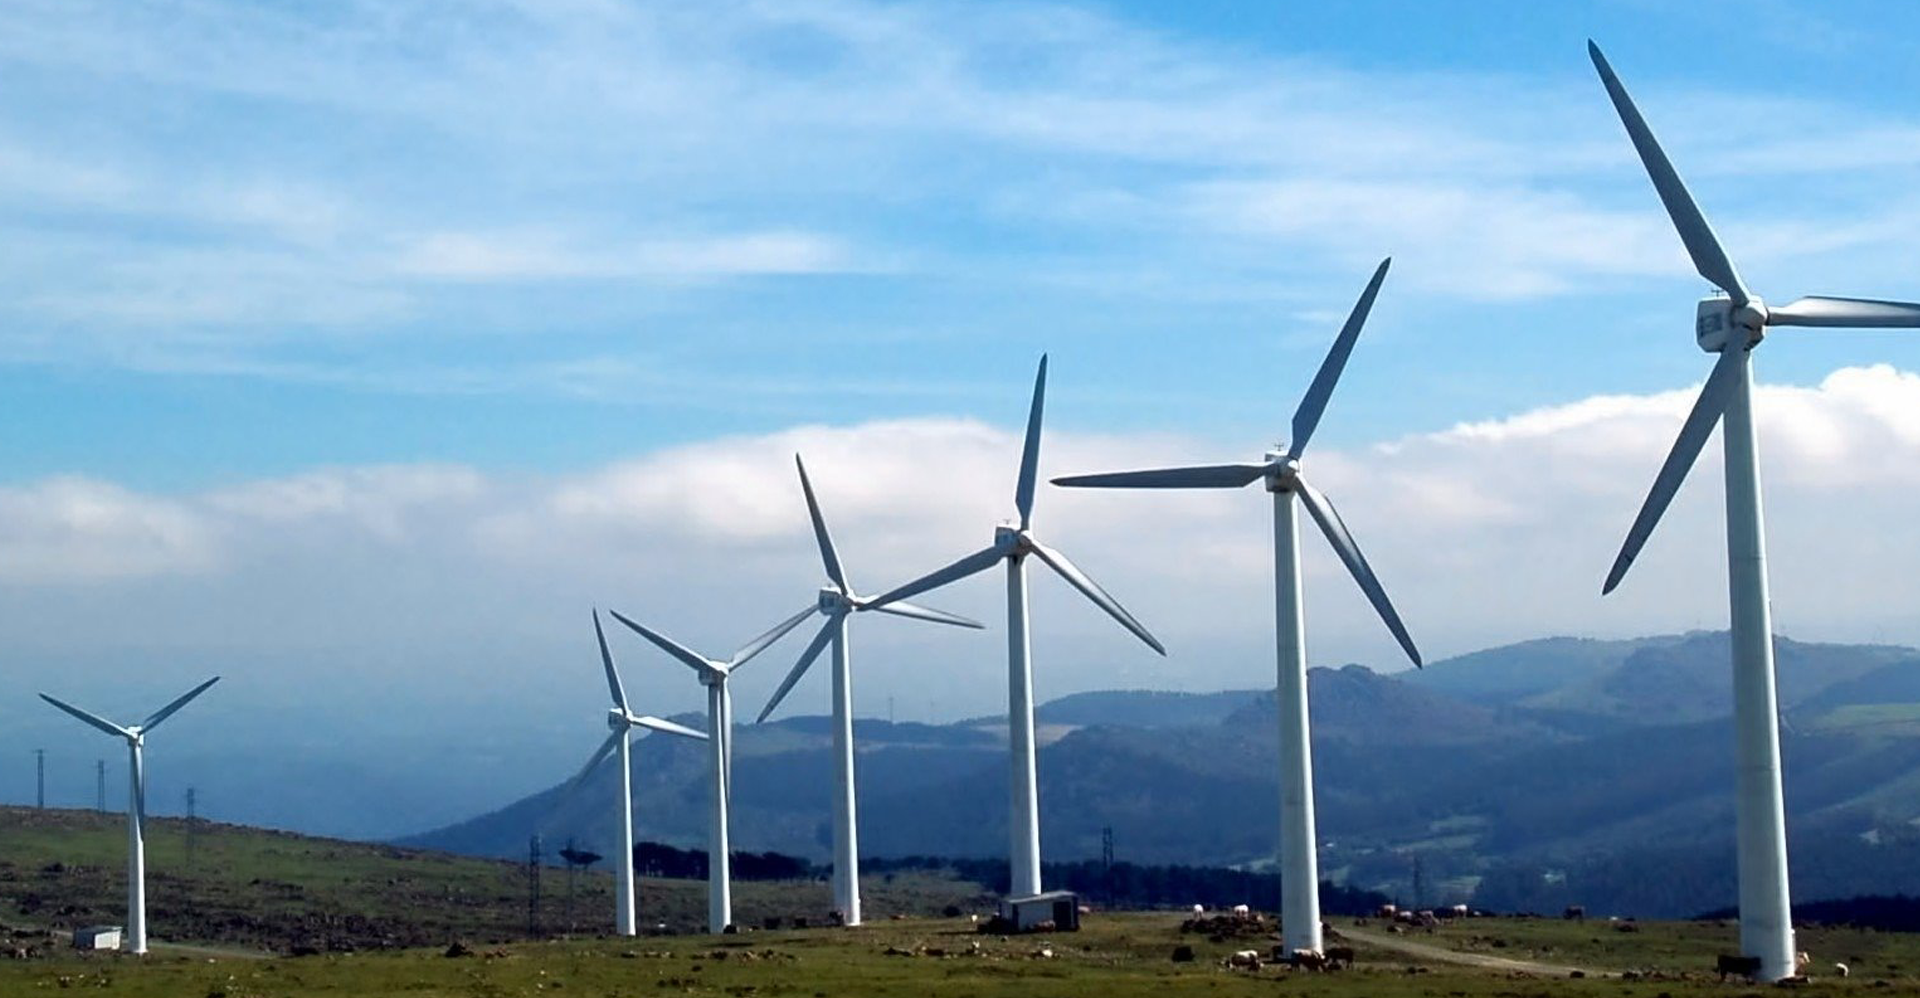 wind turbines on a hill